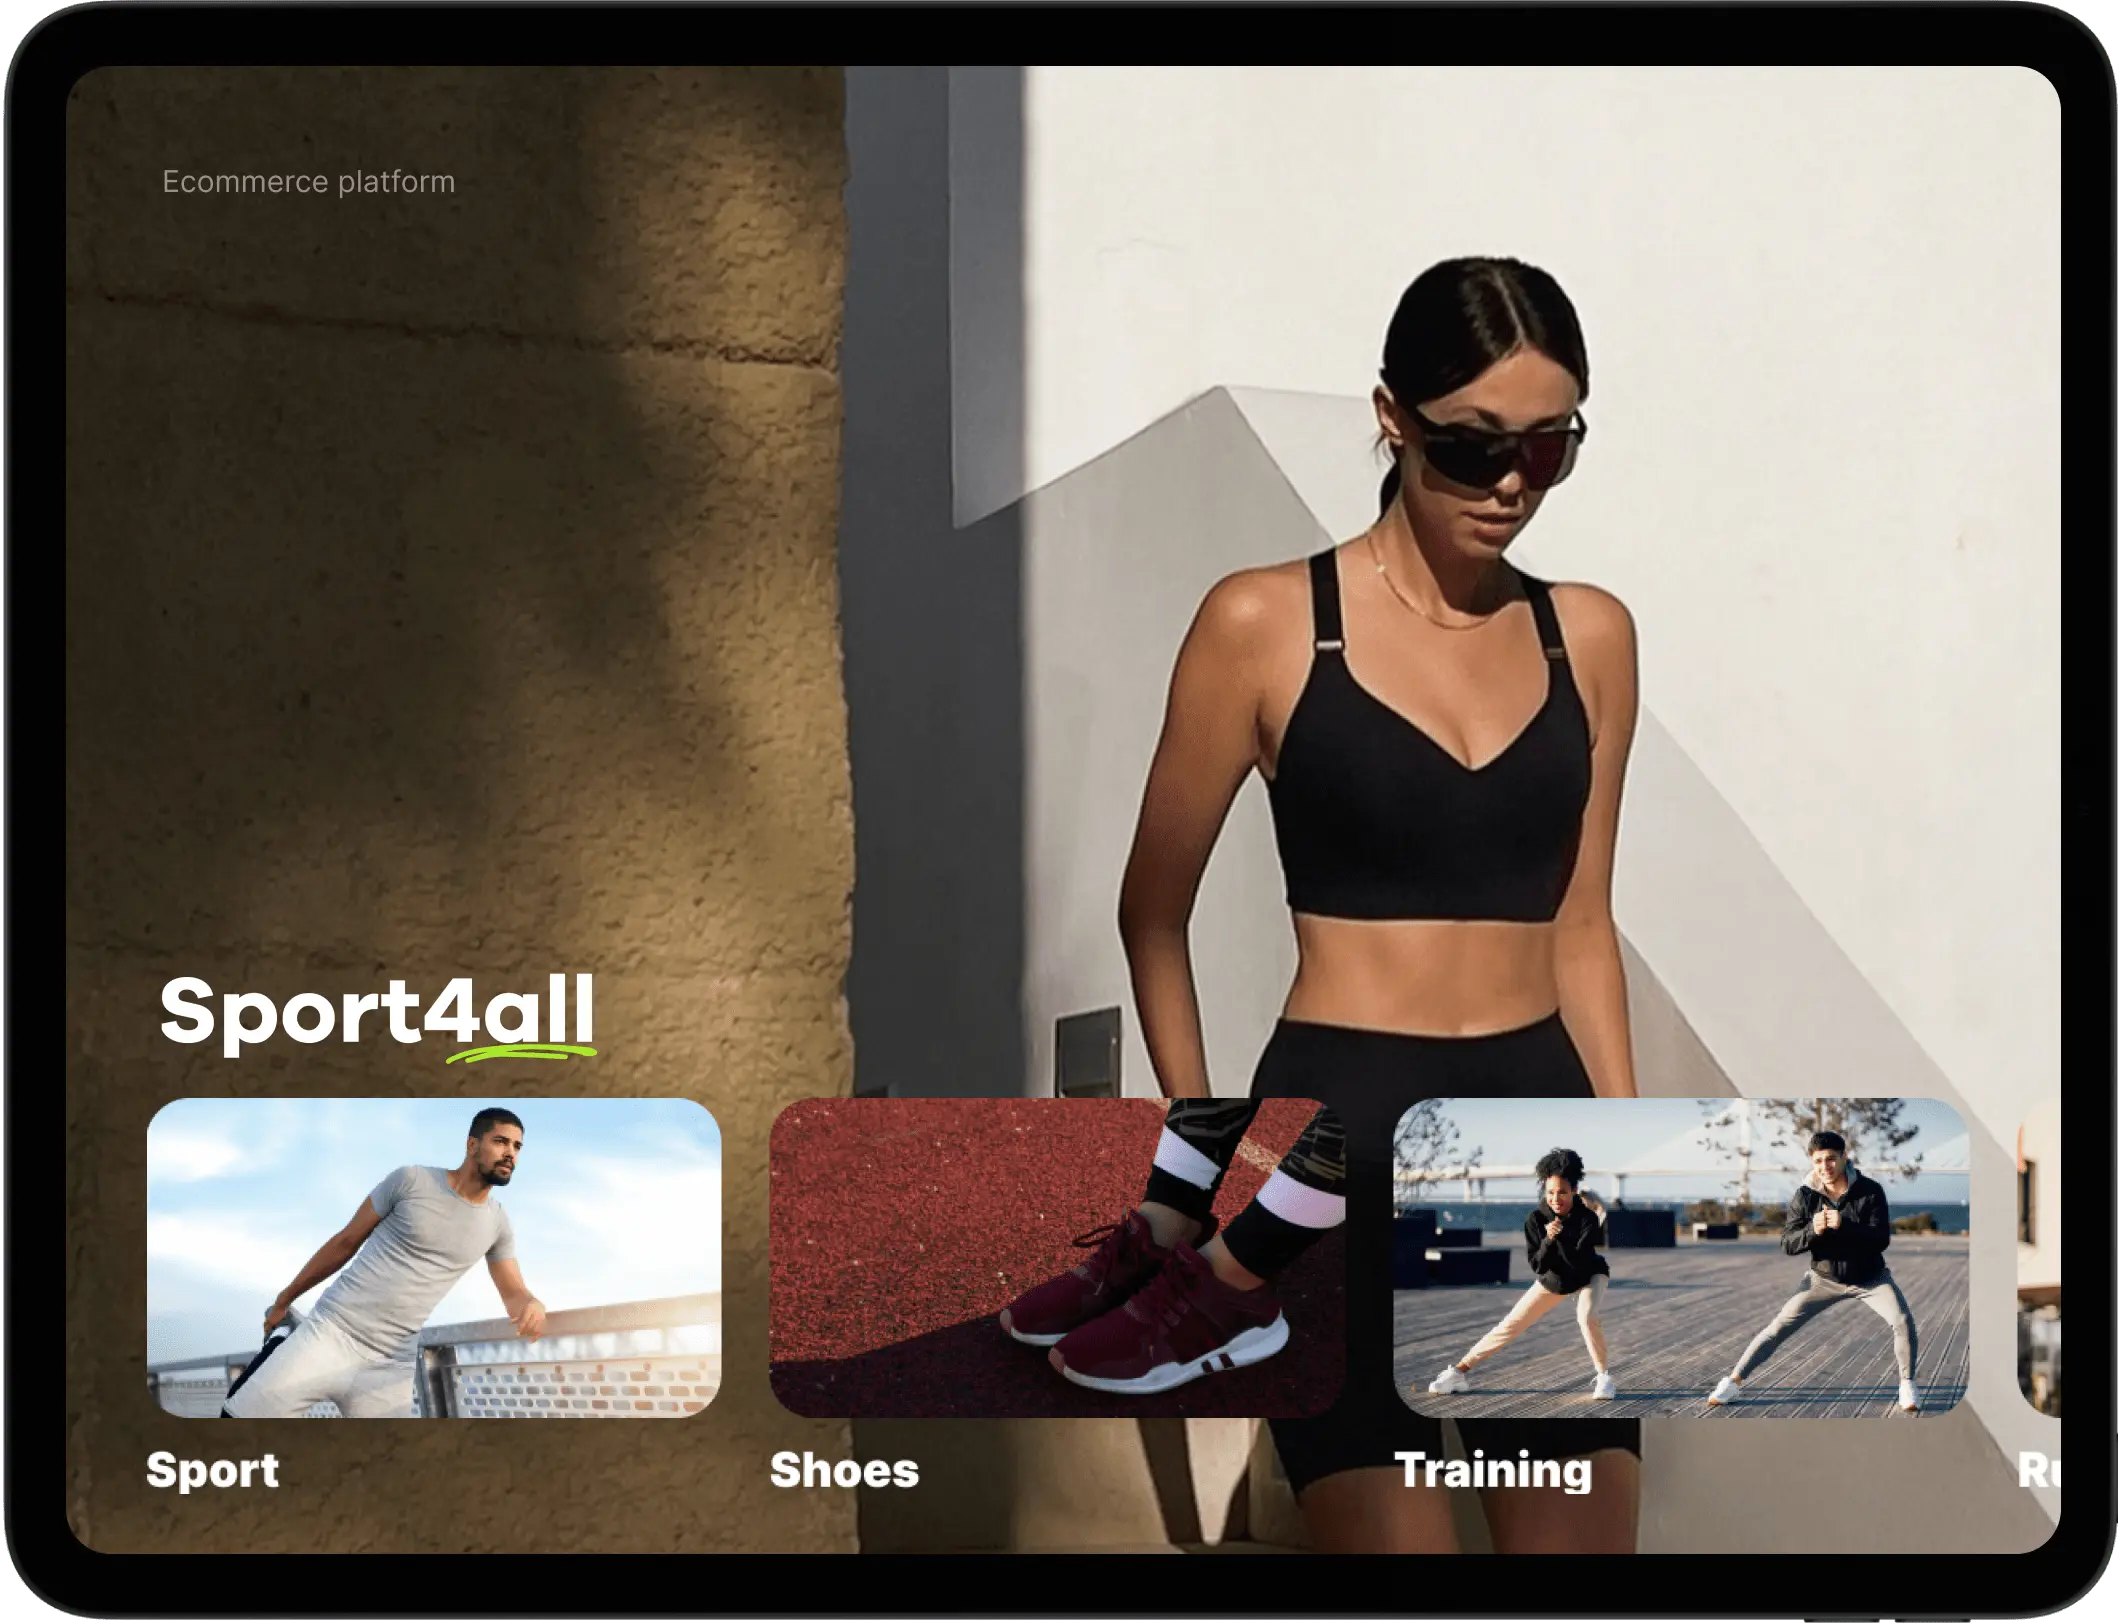 ecommerce platform web design - sport4all